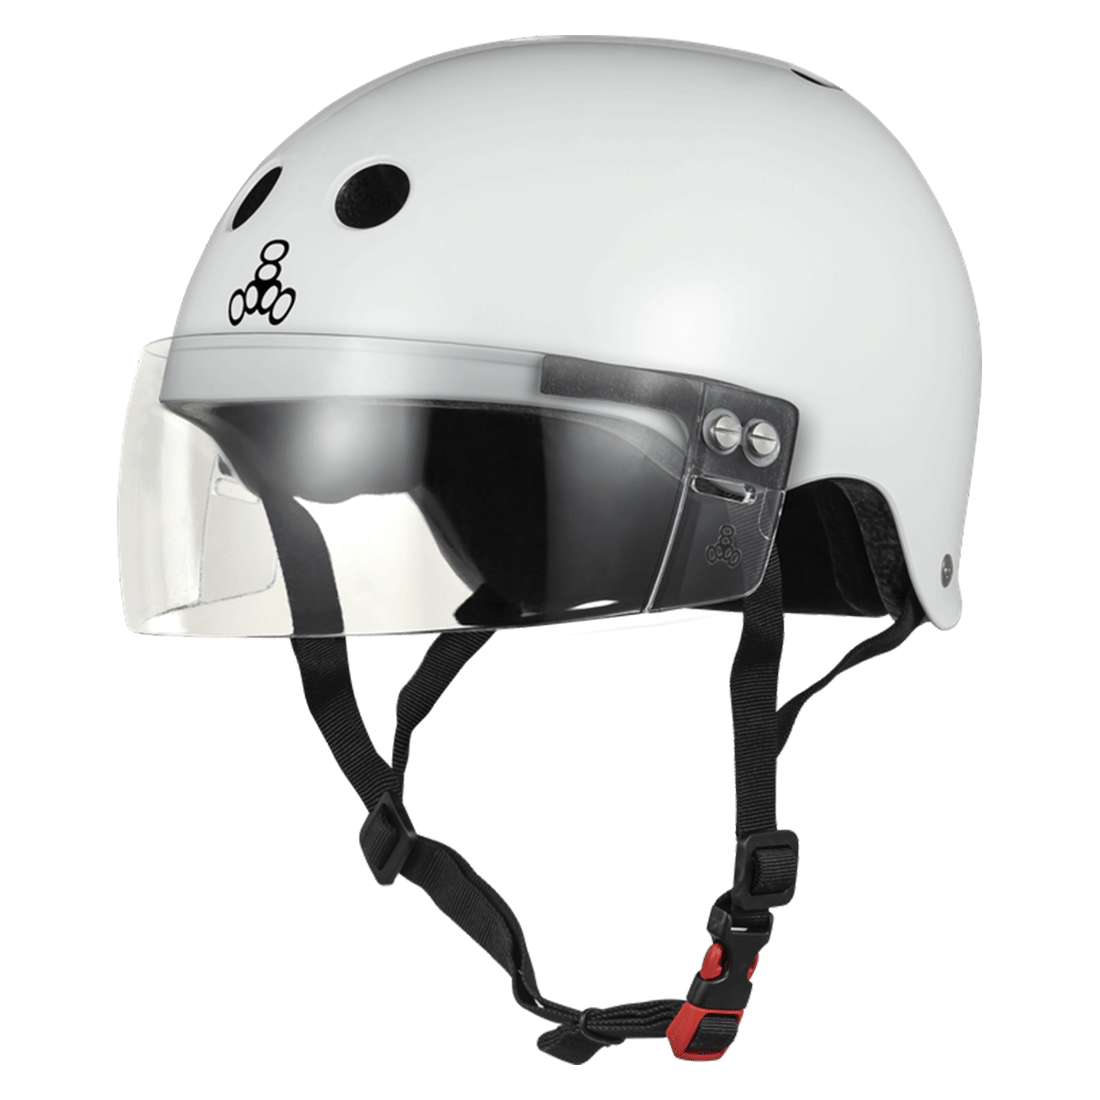 Triple 8 THE Cert SS Visor Helmet - White Gloss Helmets